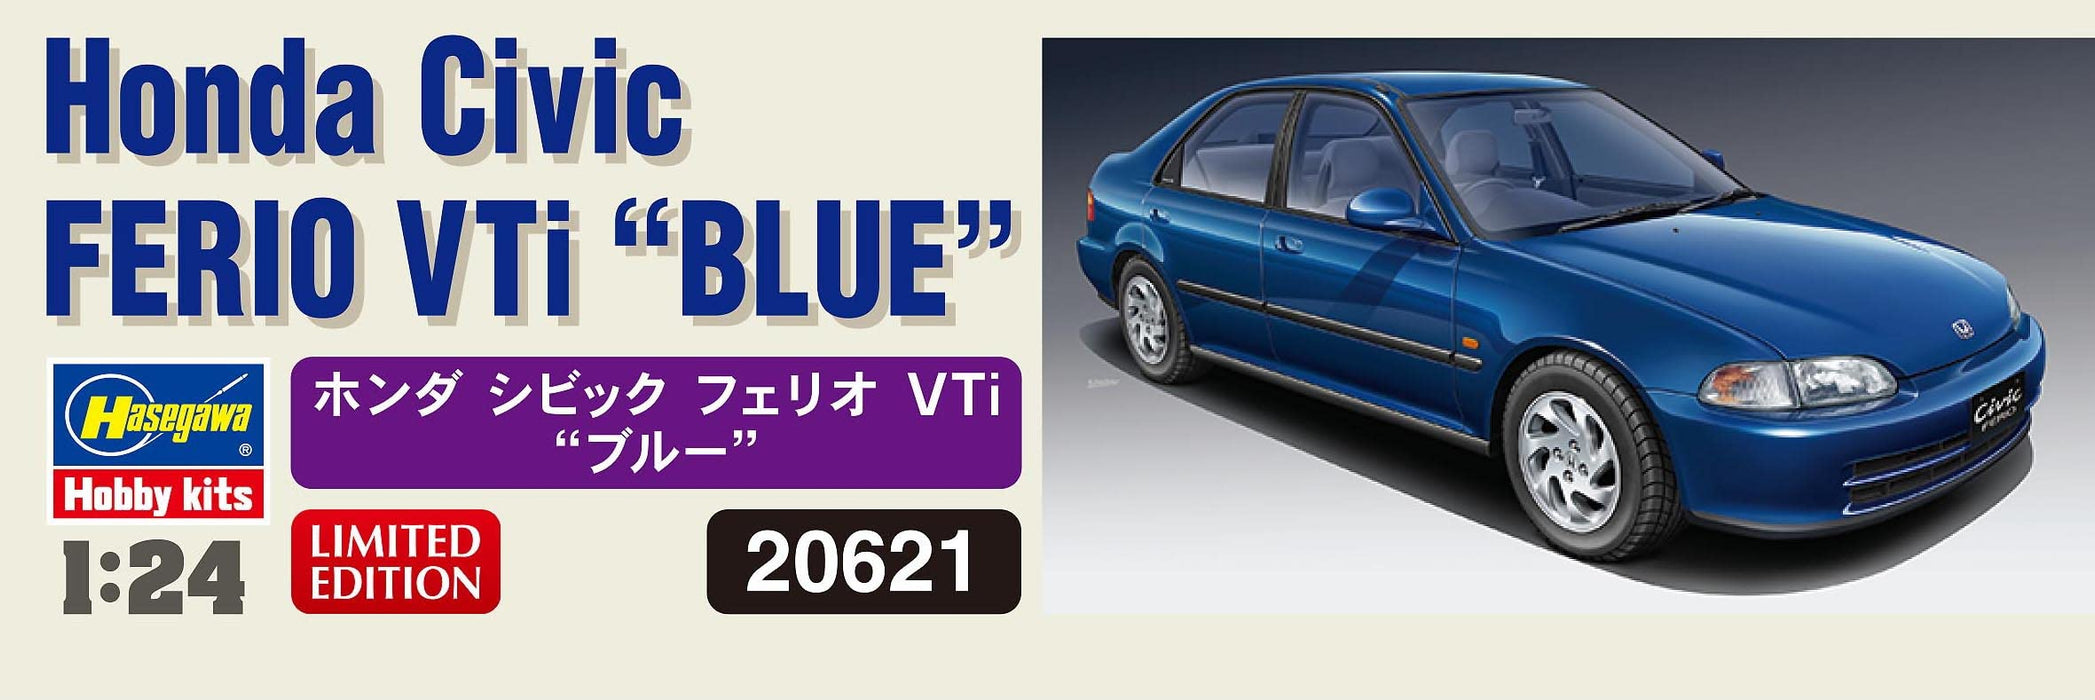 Hasegawa 1/24 Honda Civic FERIO VTi Blue Plastic Model kit 20621 Molding Color_5